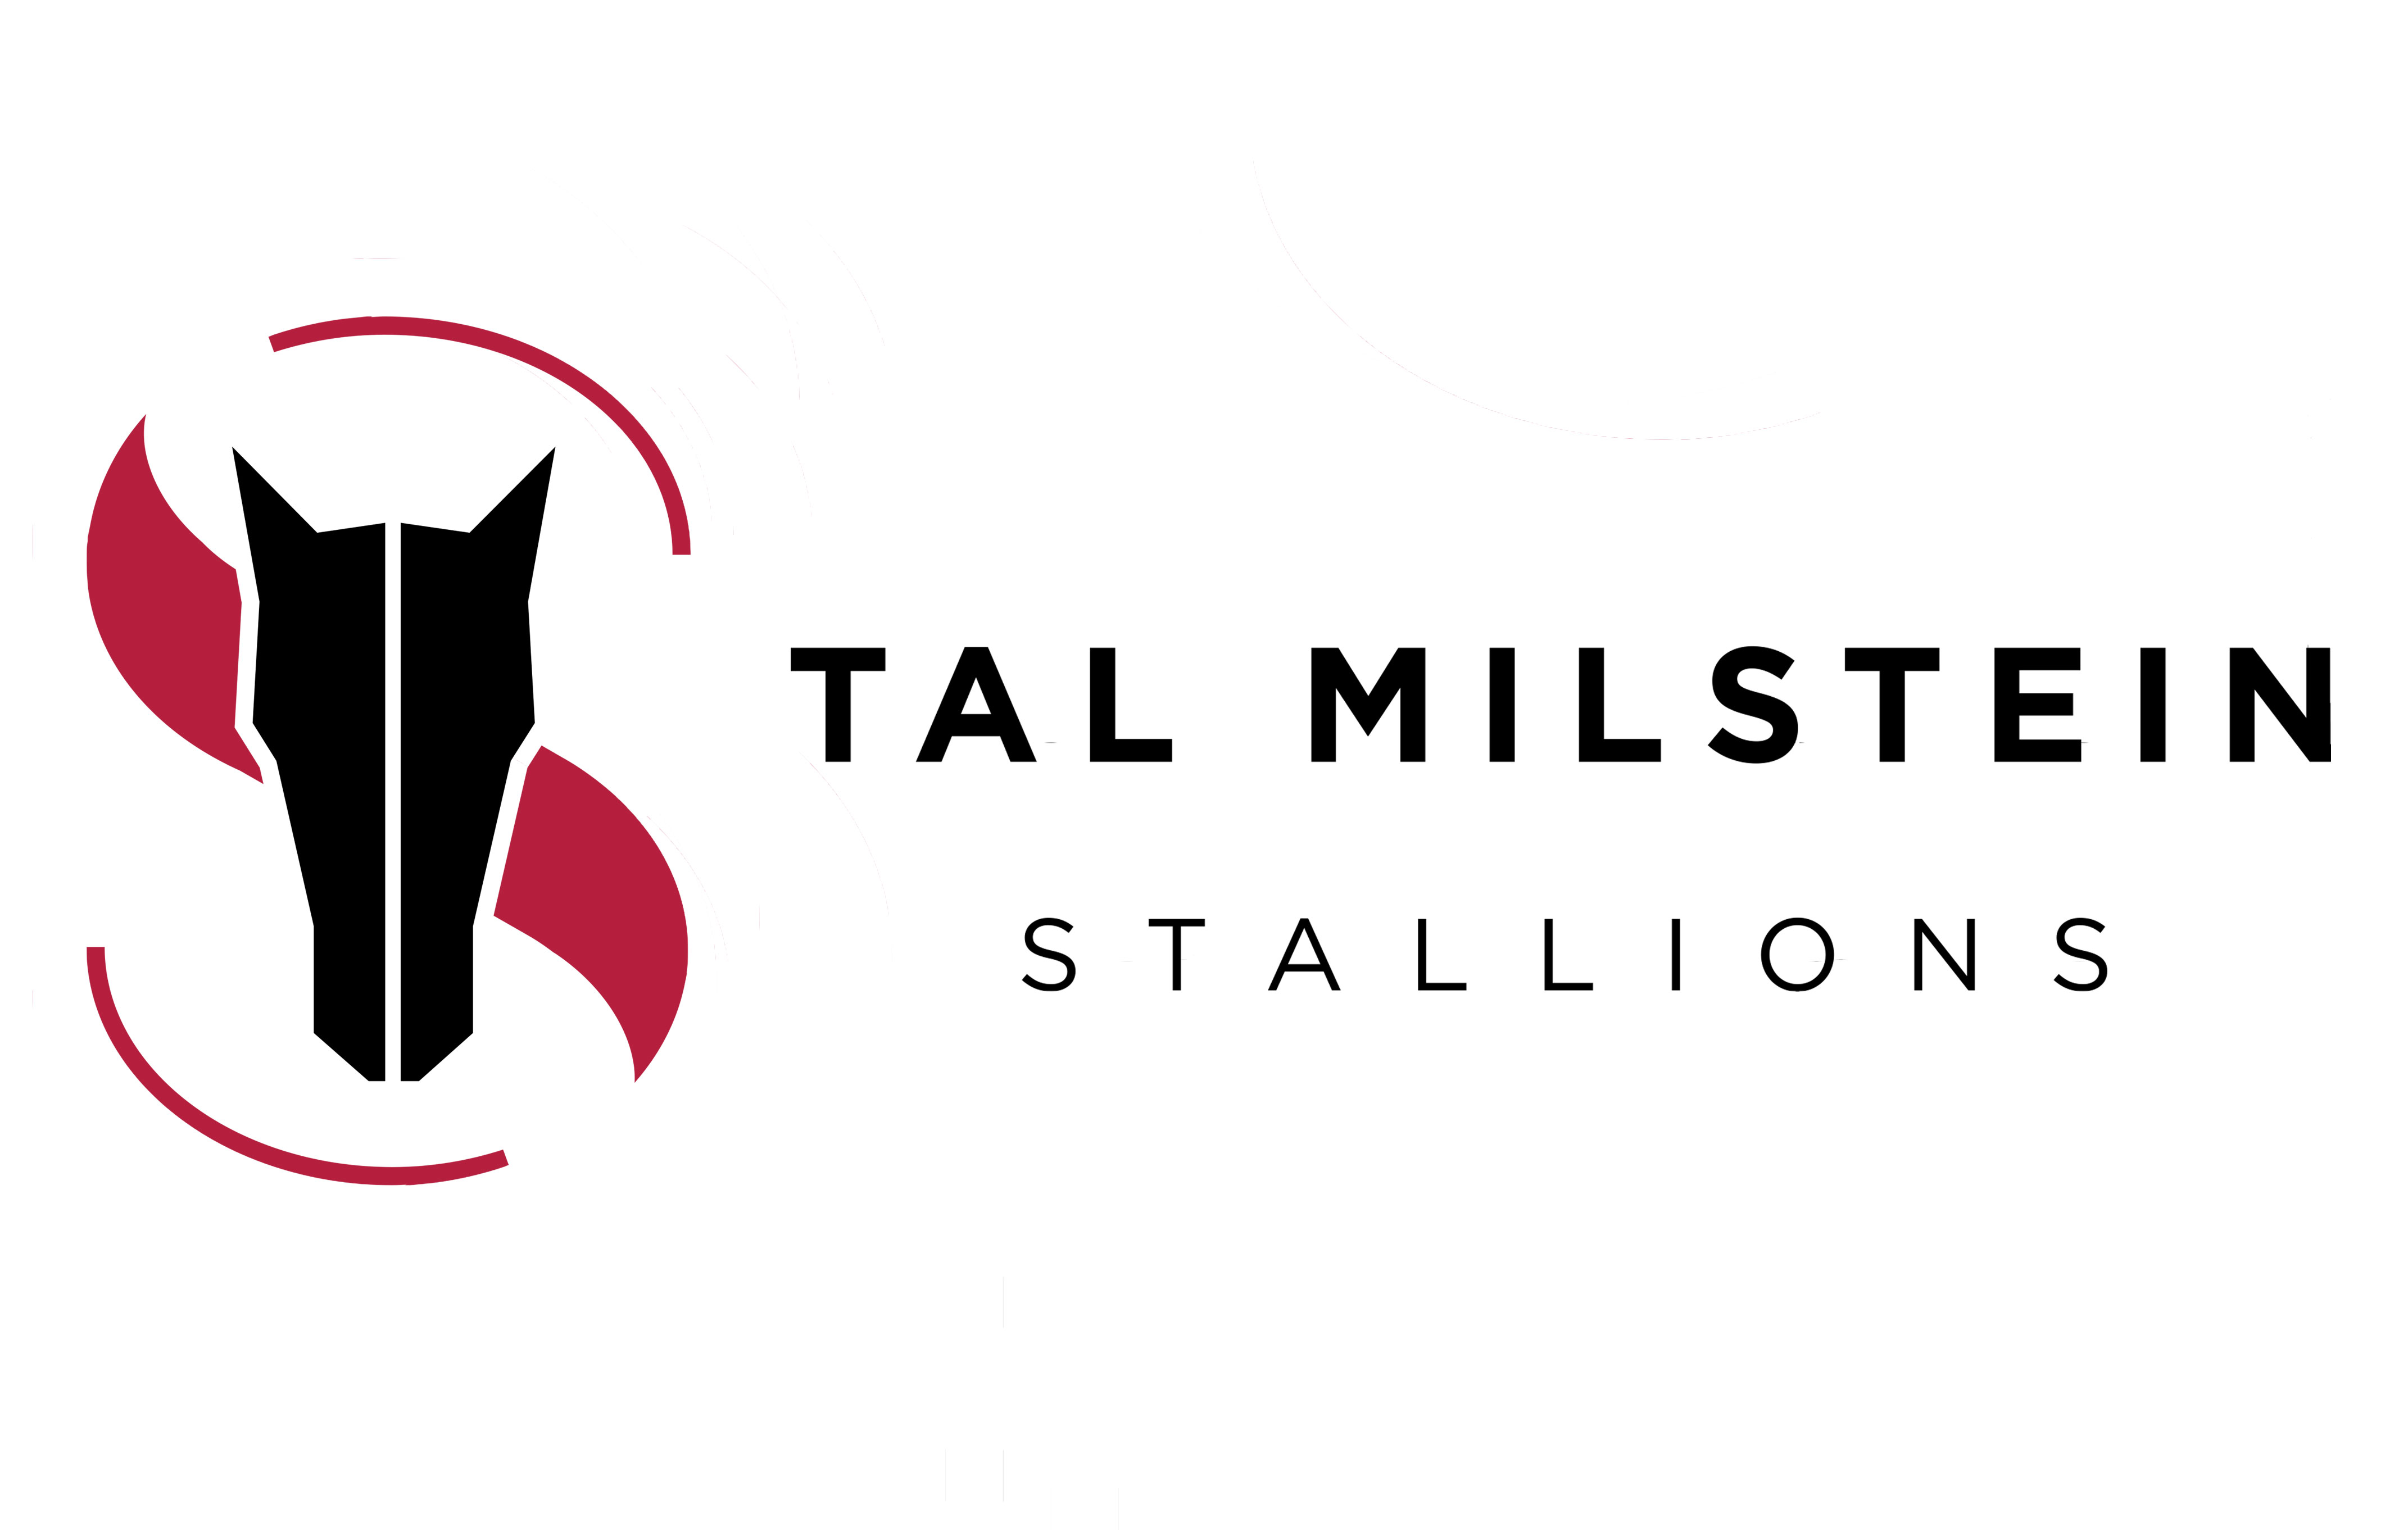 Tal milstein stallions